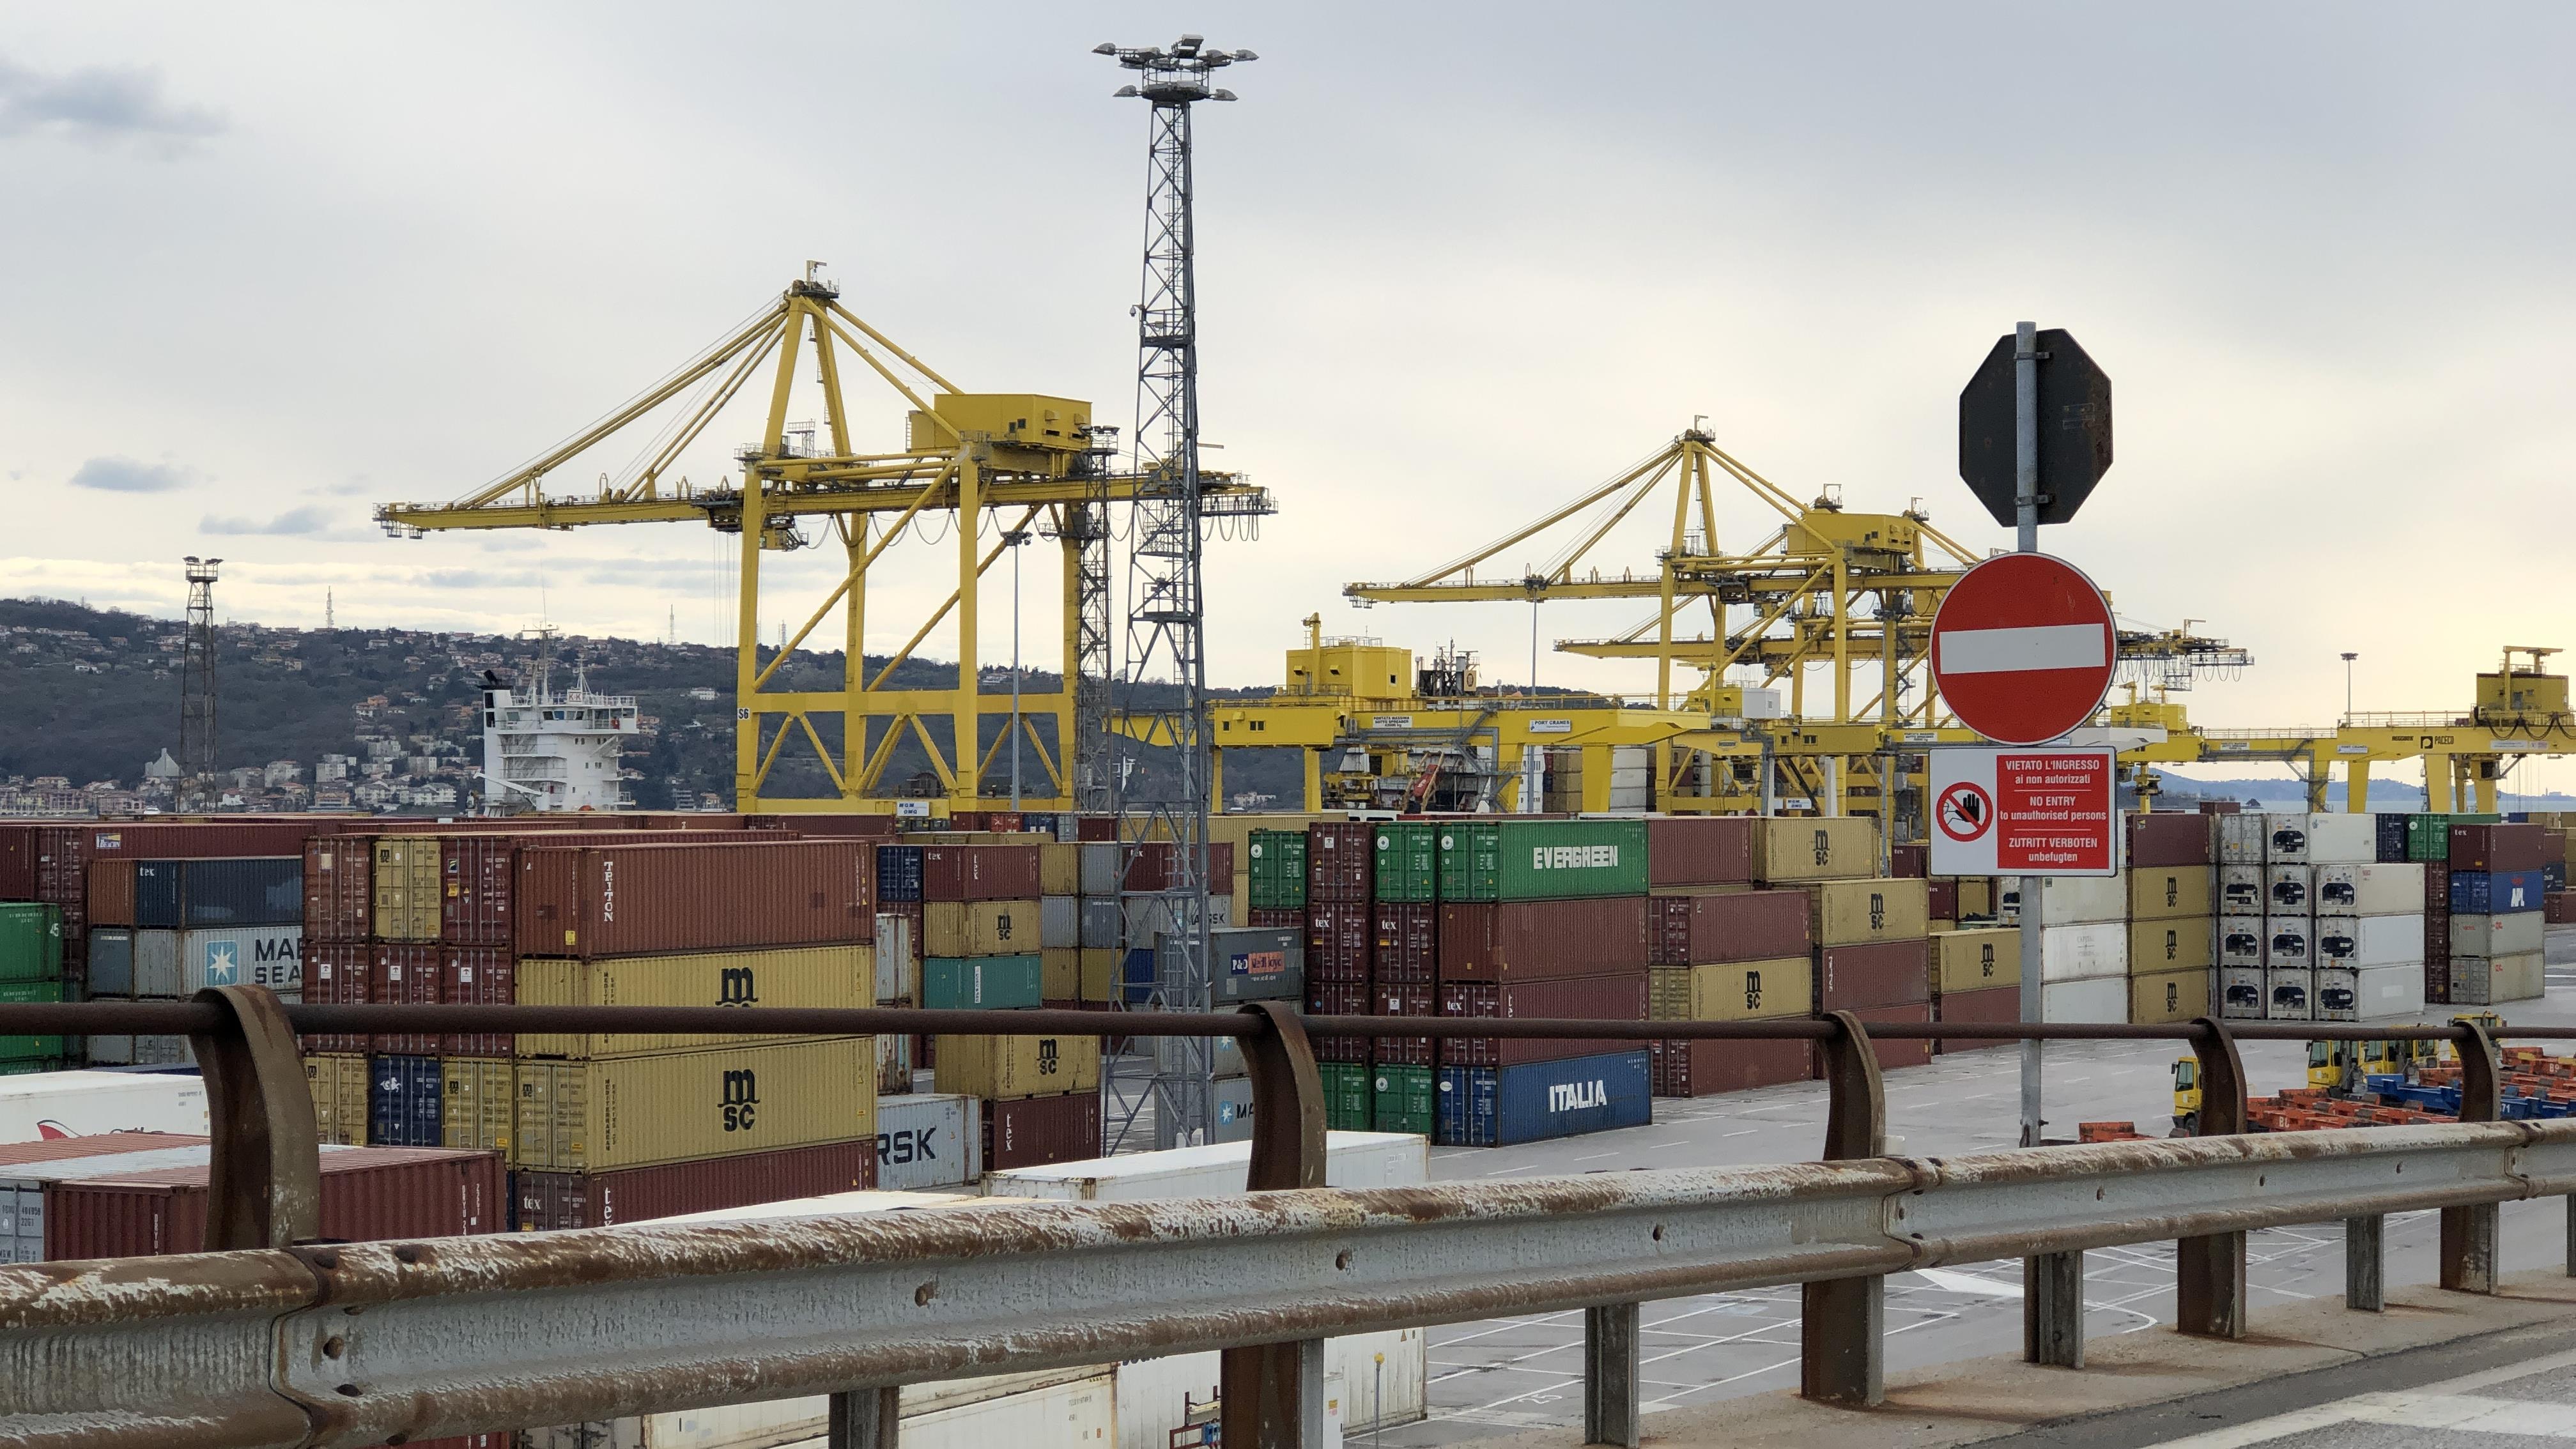 Le port de Trieste, en Italie, est dans la mire d'investisseurs chinois et il n'est pas le seul lieu en Europe. Certains s'inquiètent de la présence grandissante de la Chine sur le continent.